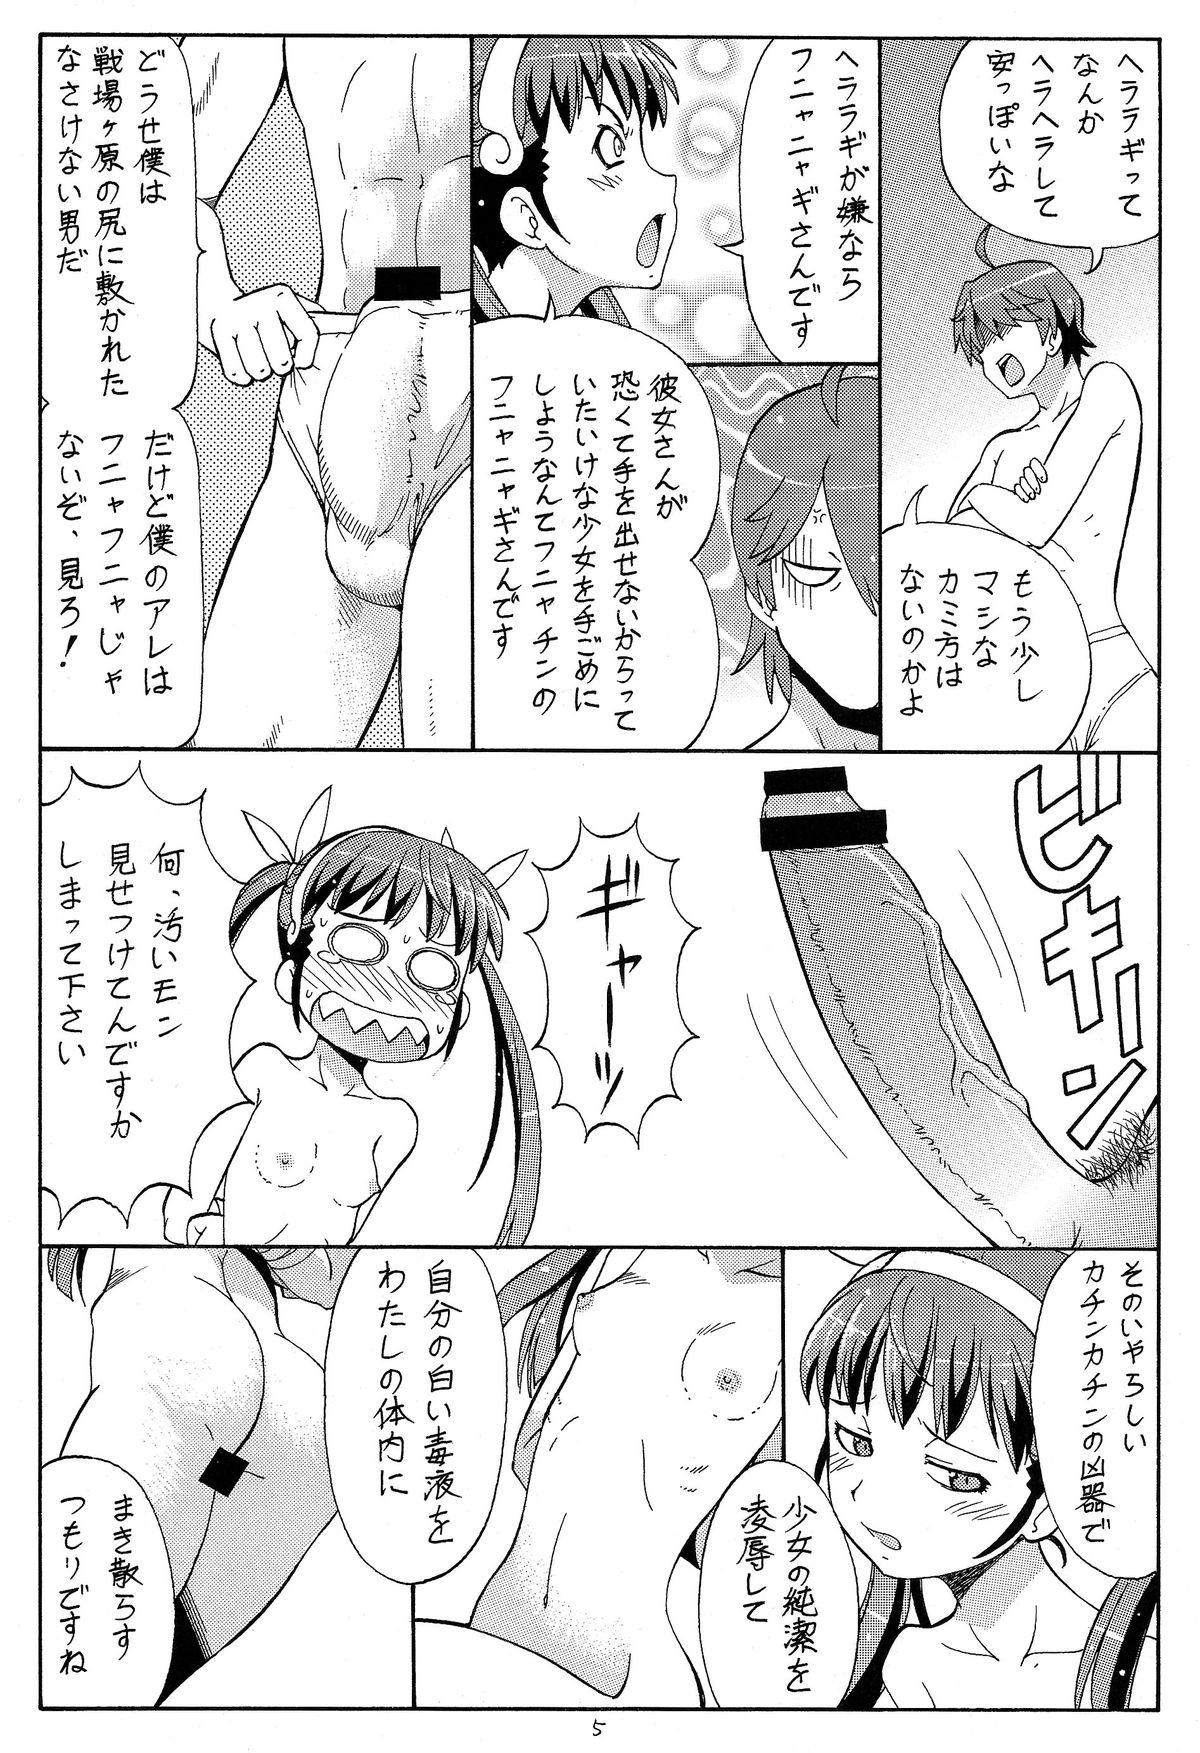 Tanga Hito ni Hakanai to Kaite "Araragi" to Yomu 4 - Bakemonogatari Mmf - Page 7